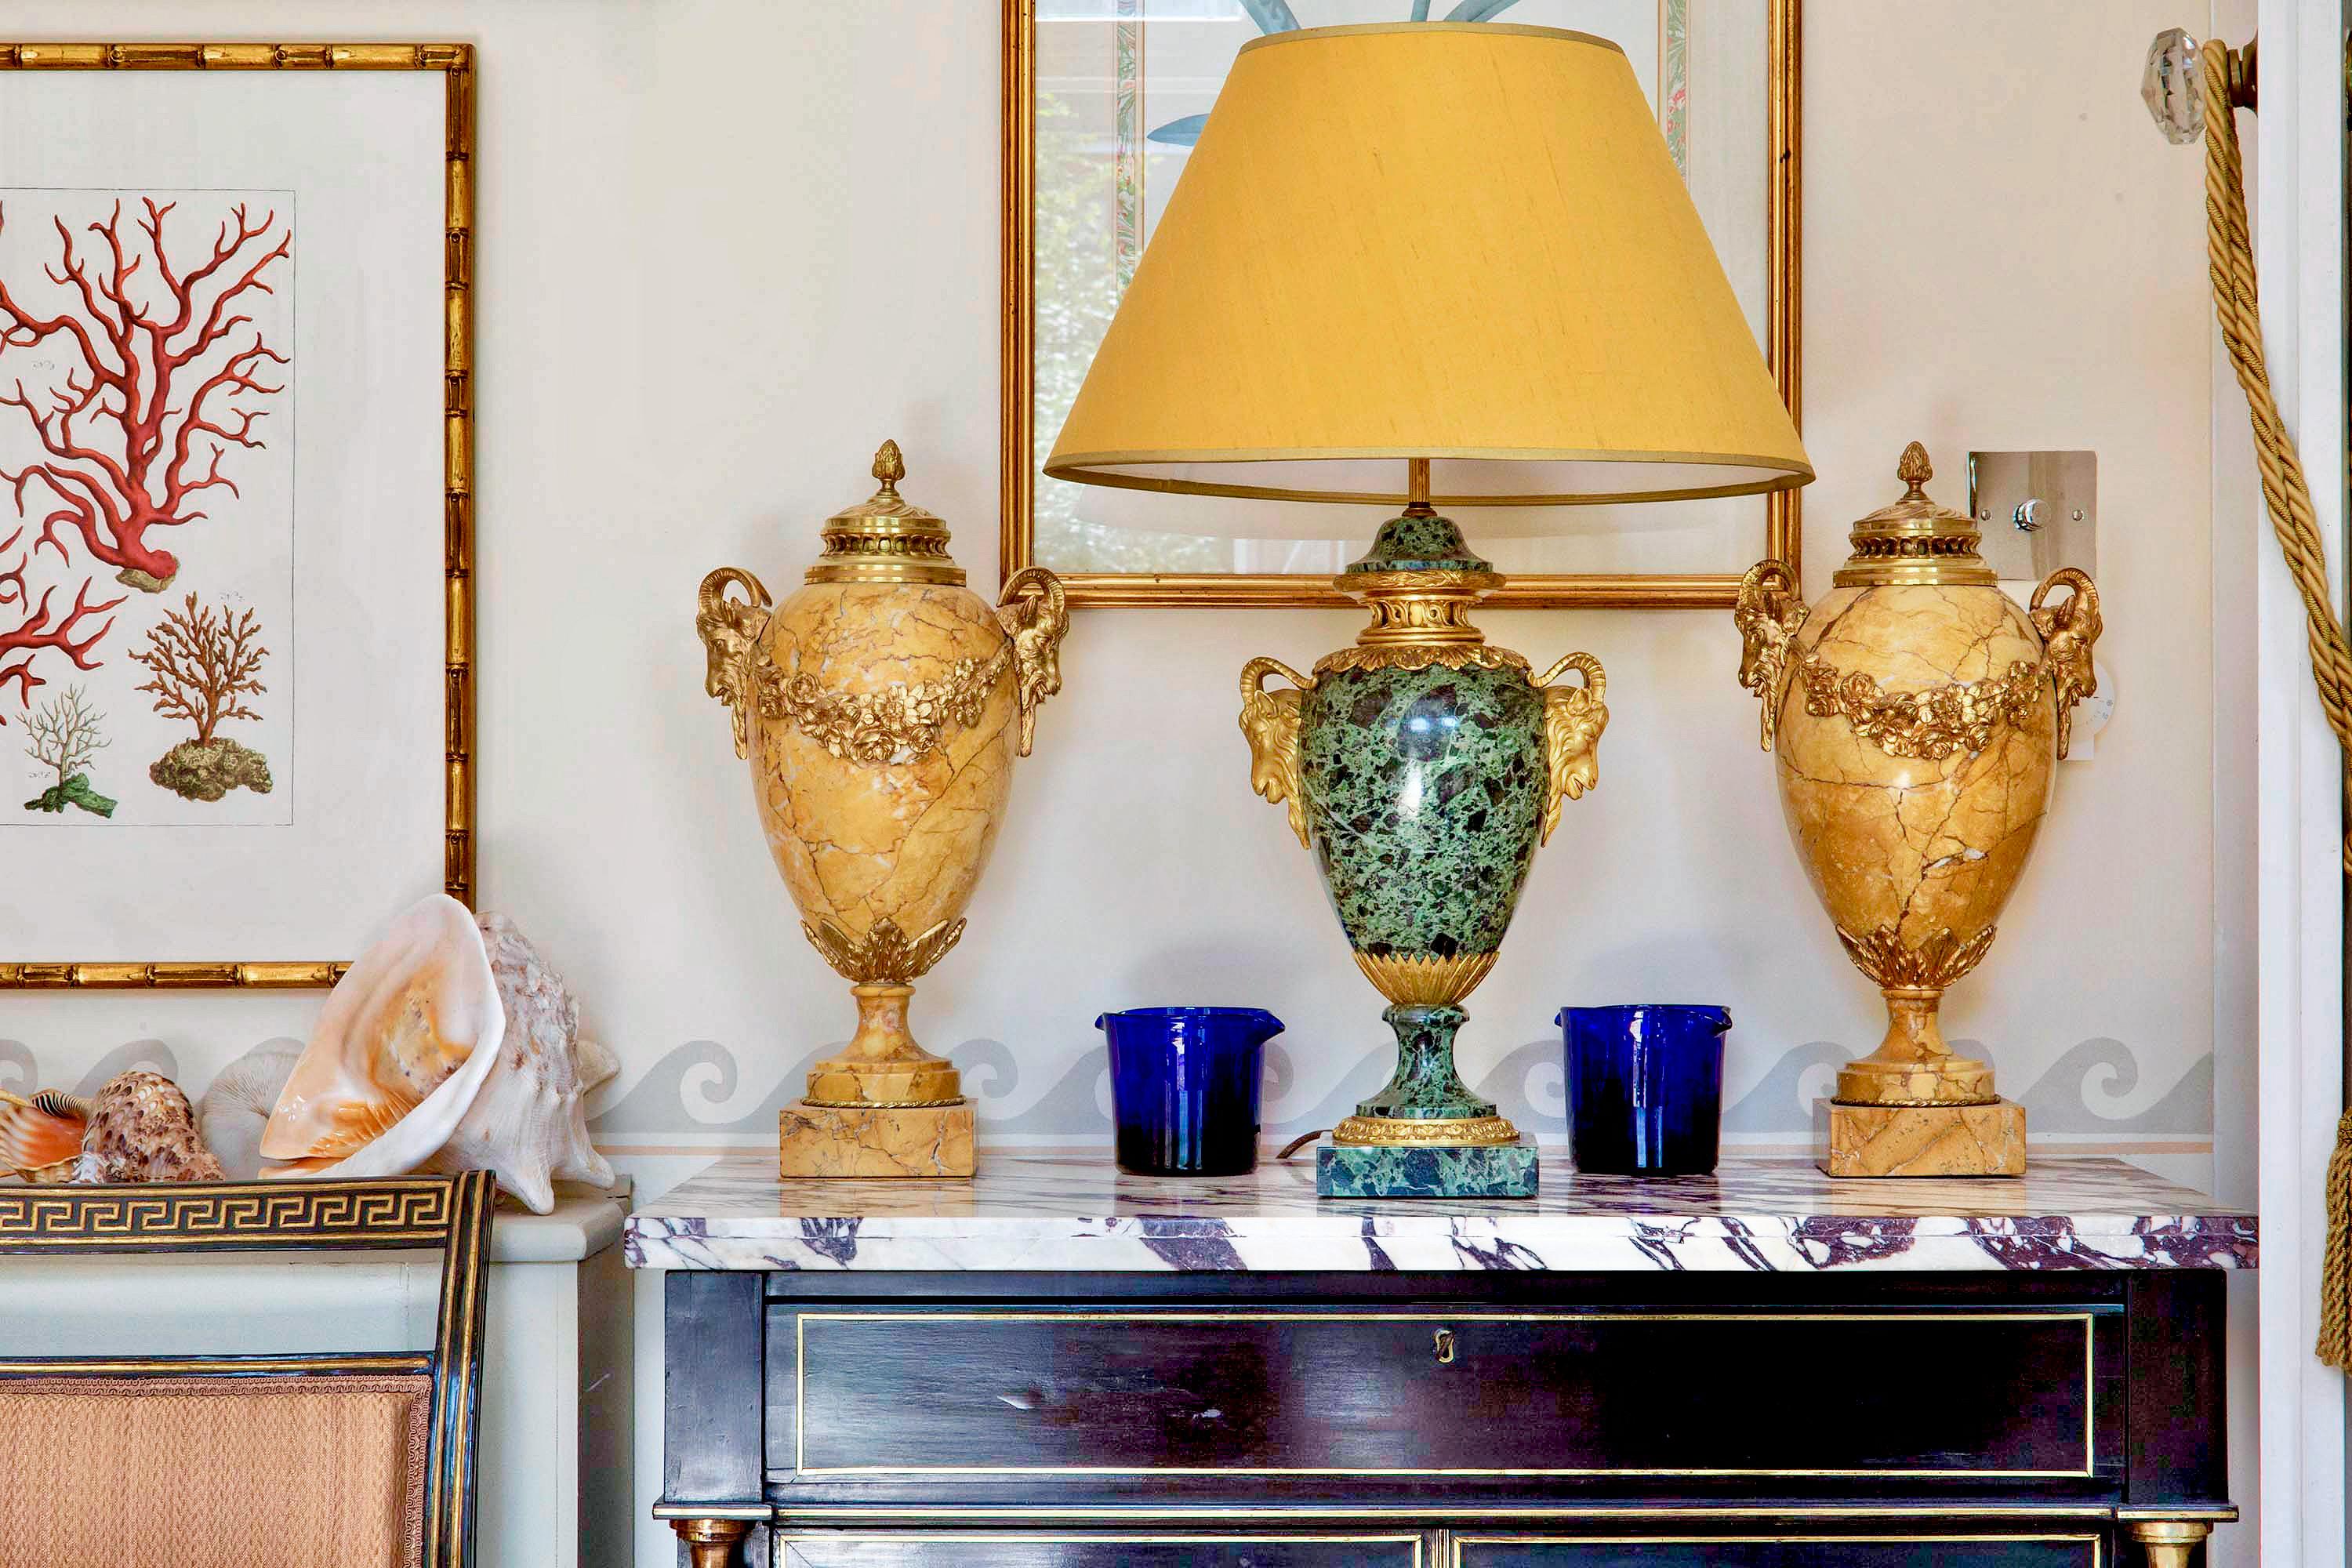 Ein äußerst dekoratives Paar neoklassizistischer Urnen aus Siena-Marmor mit verzierten, vergoldeten Bronzebeschlägen.

Französisch, Ende 19. - Anfang 20. Jahrhundert.

Wir lieben die Farbe und die Größe dieser prächtigen Urnen.

Perfektes Objekt für